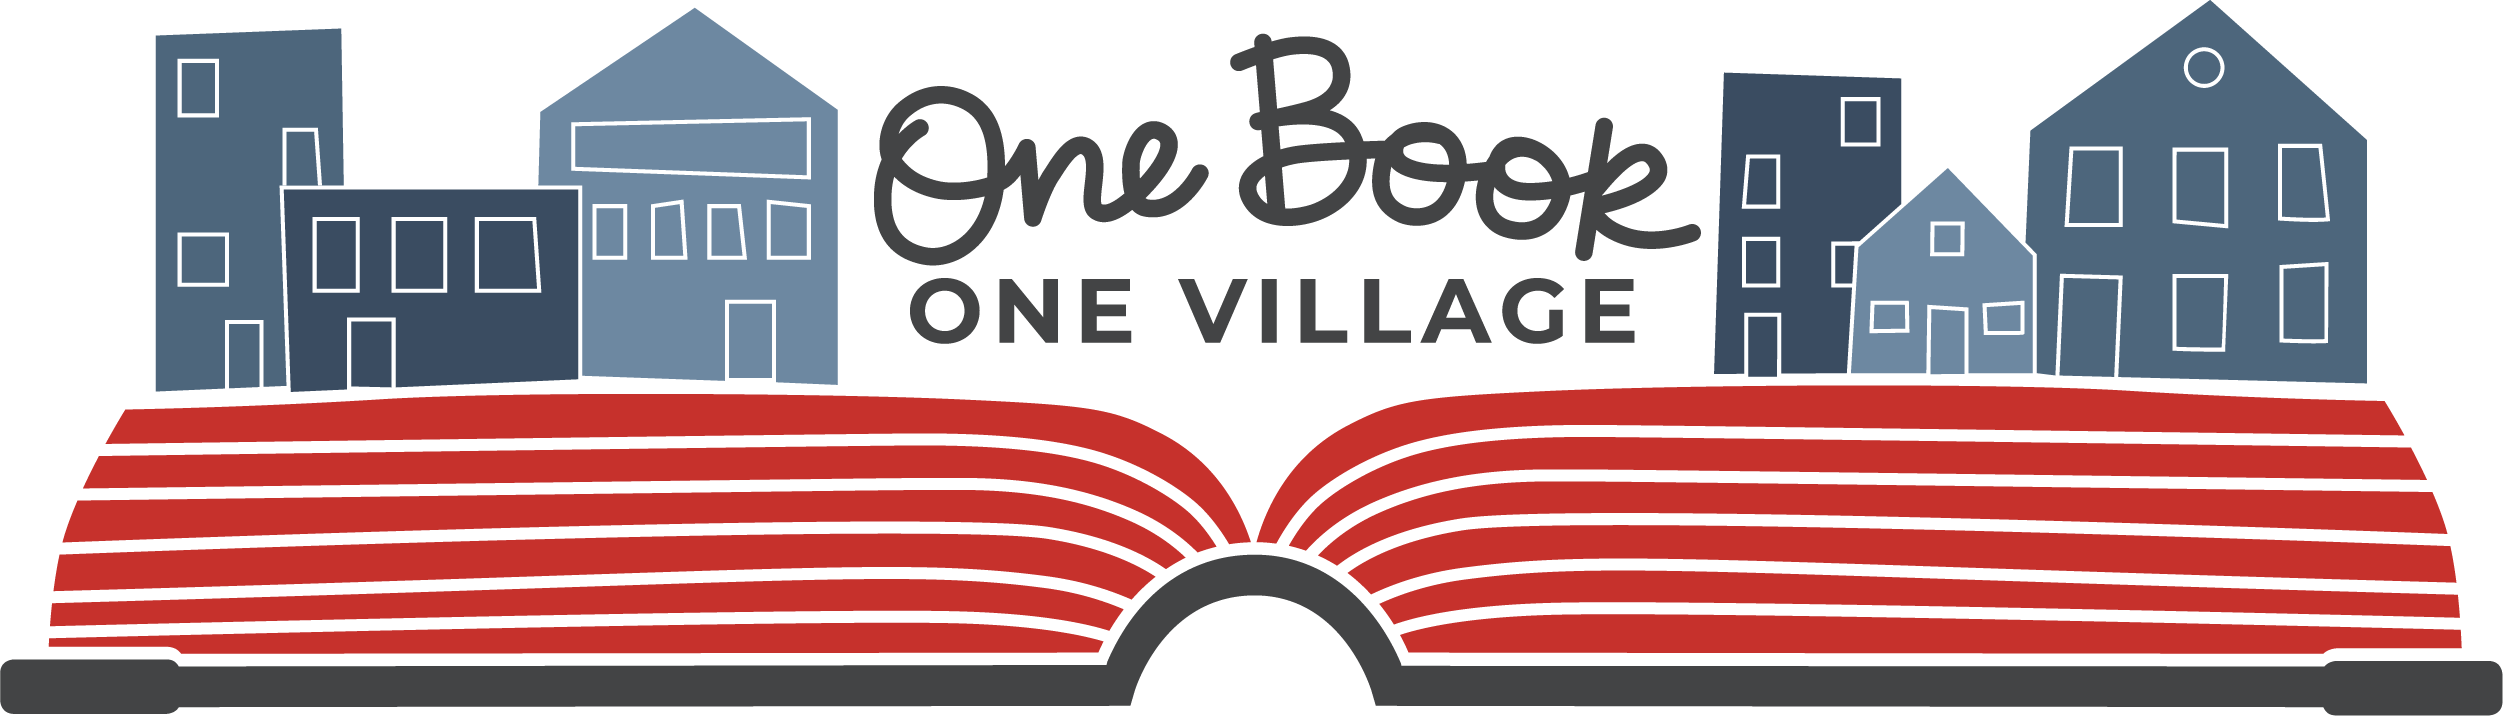 One Book One Village logo